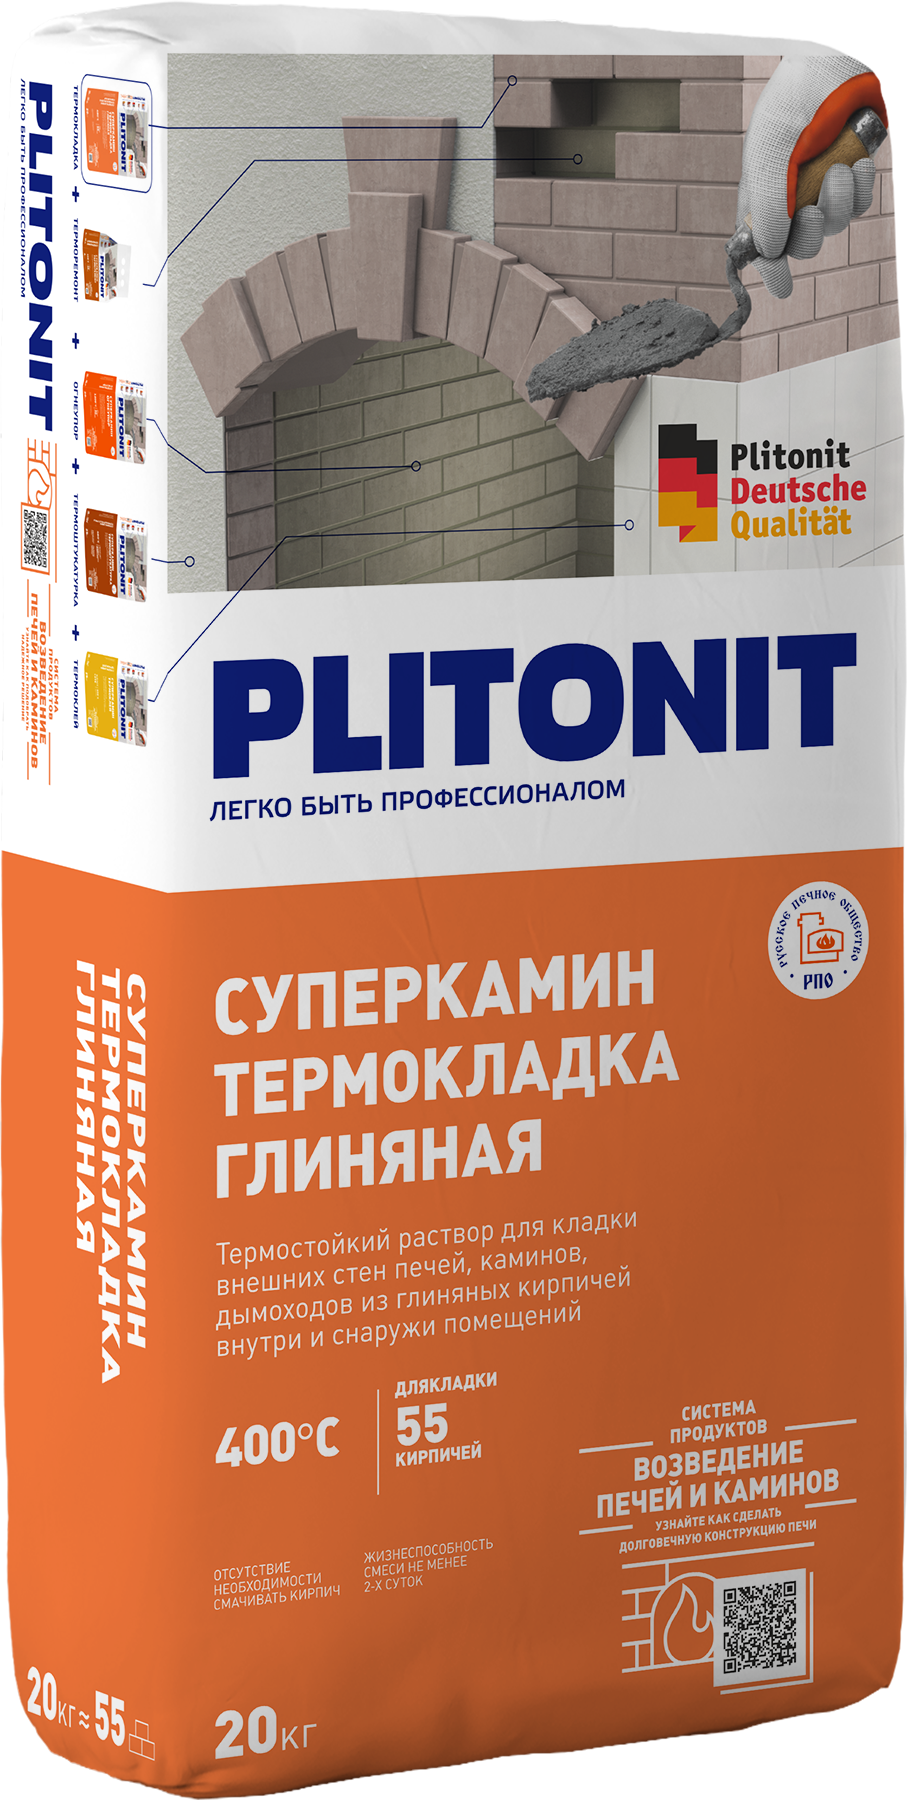 Смеси для устройства печей и каминов «Суперкамин» PLITONIT СуперКамин  ТермоКладка Глиняная — Plitonit.ru